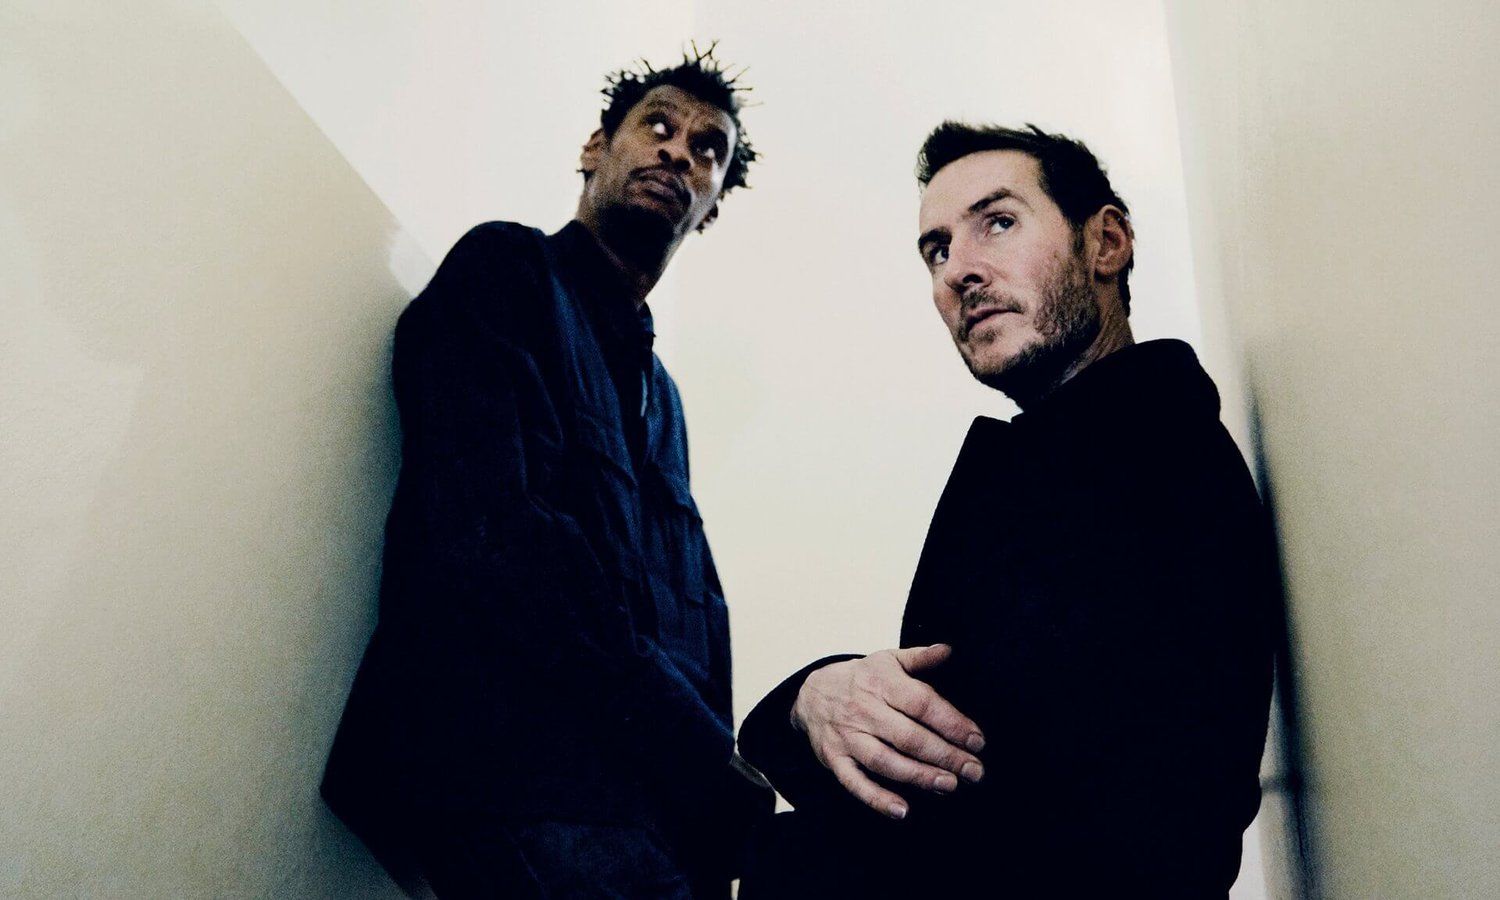 Massive Attack wallpaper, Music, HQ Massive Attack pictureK Wallpaper 2019